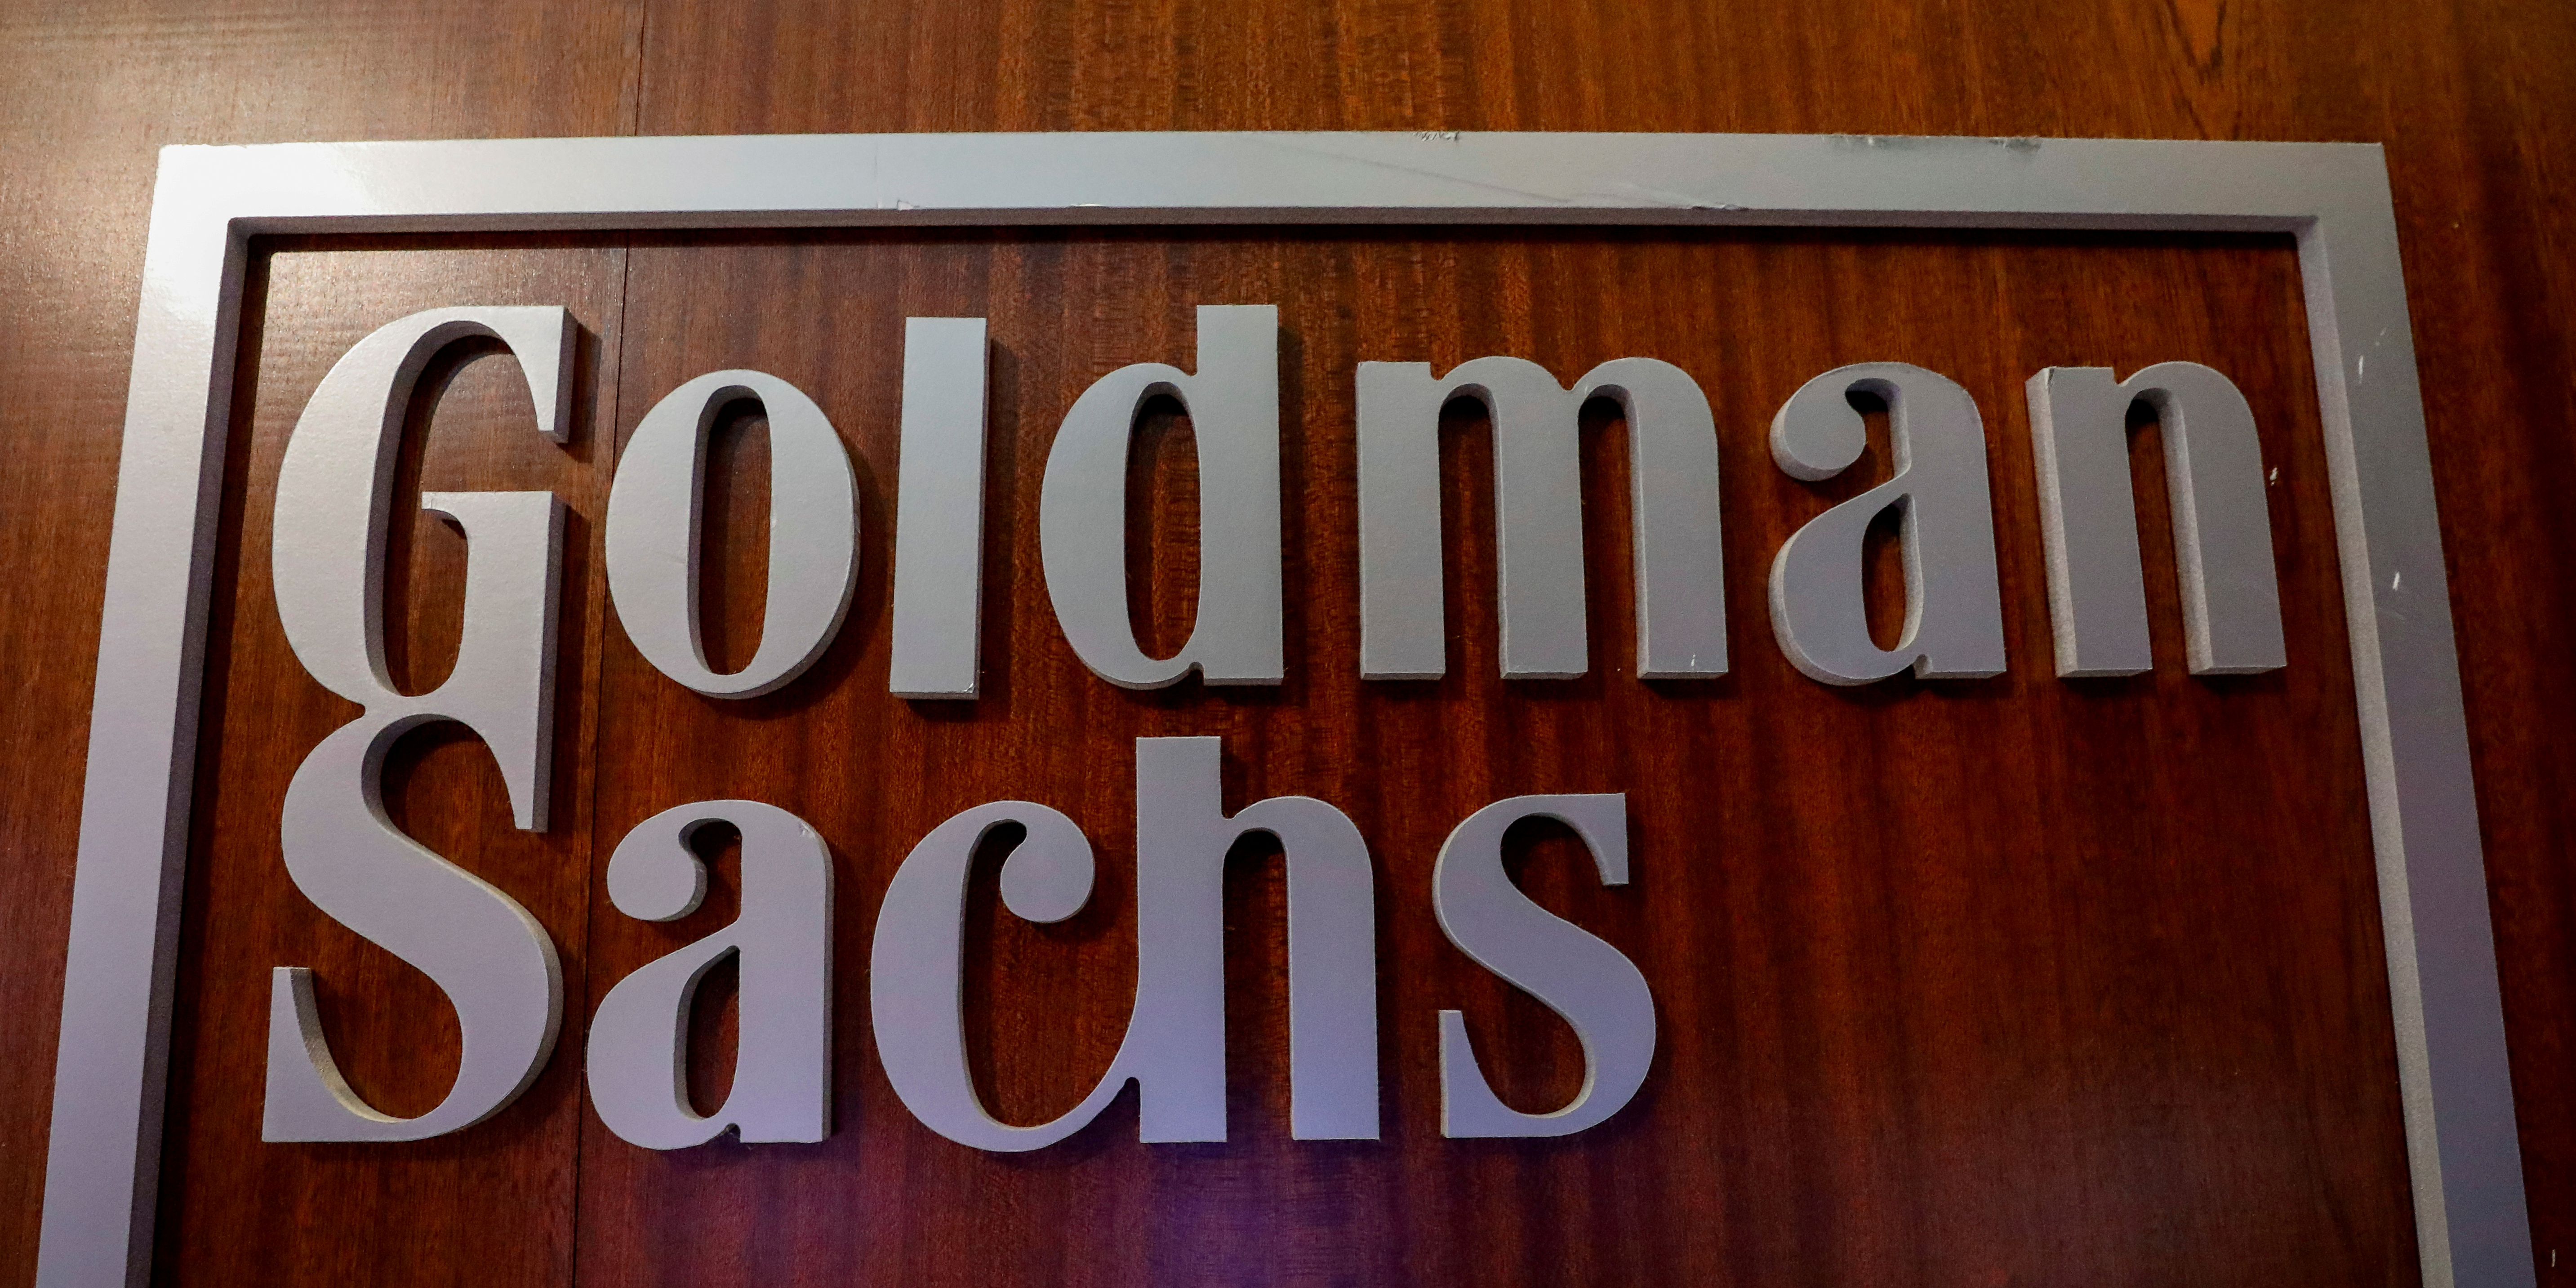 Goldman Sachs a presque doublé son bénéfice net au troisième trimestre